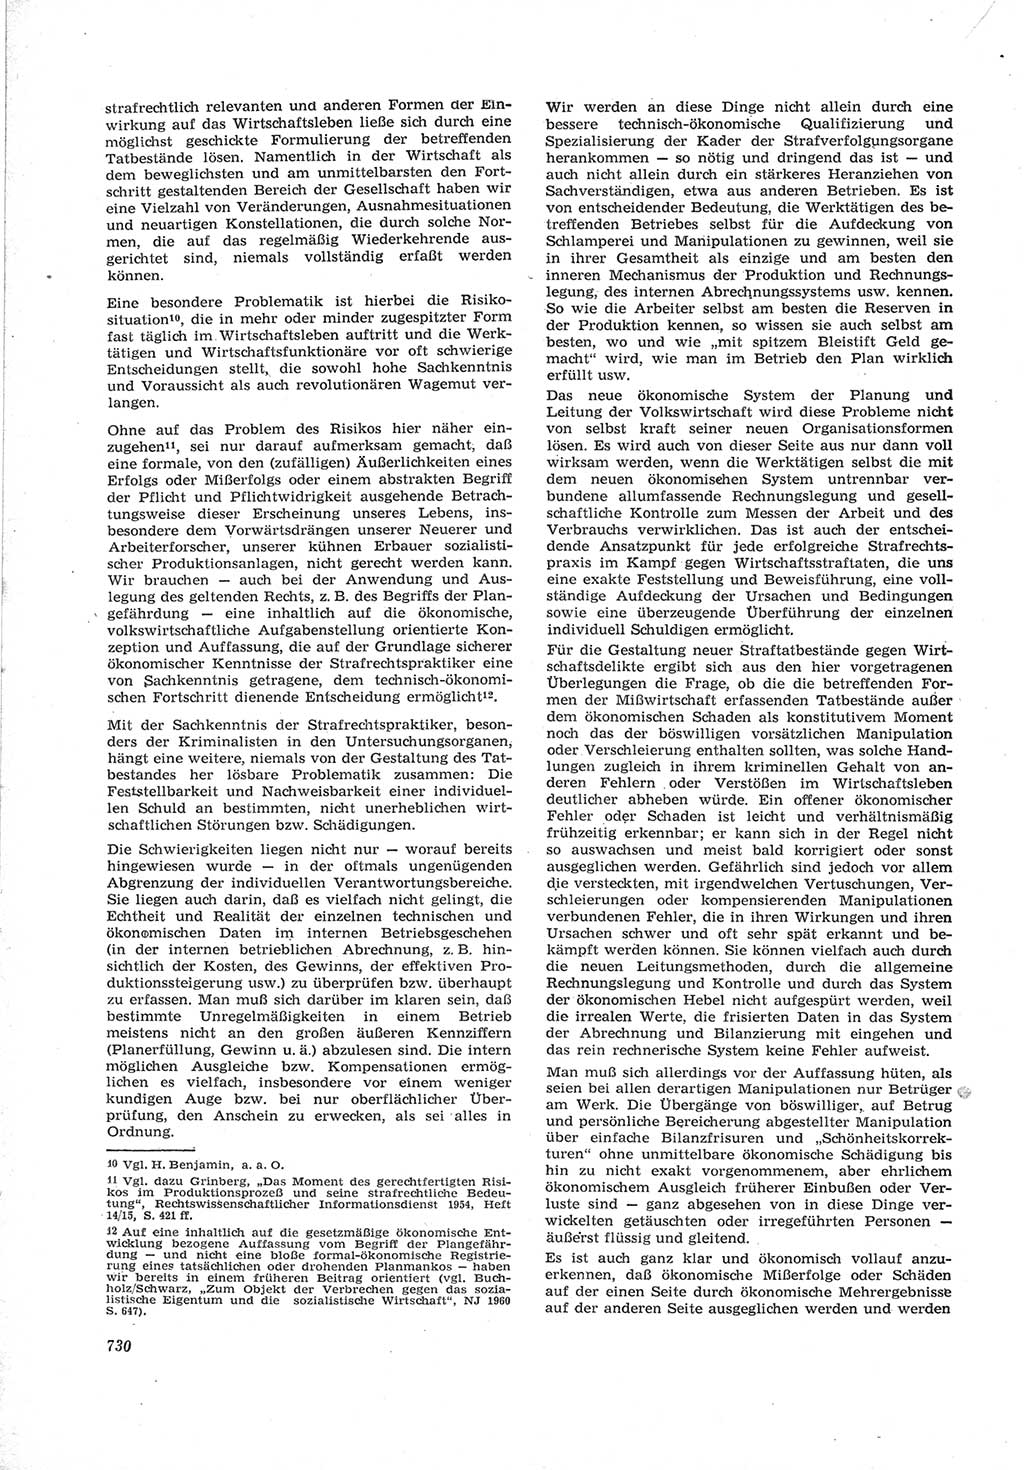 Neue Justiz (NJ), Zeitschrift für Recht und Rechtswissenschaft [Deutsche Demokratische Republik (DDR)], 17. Jahrgang 1963, Seite 730 (NJ DDR 1963, S. 730)